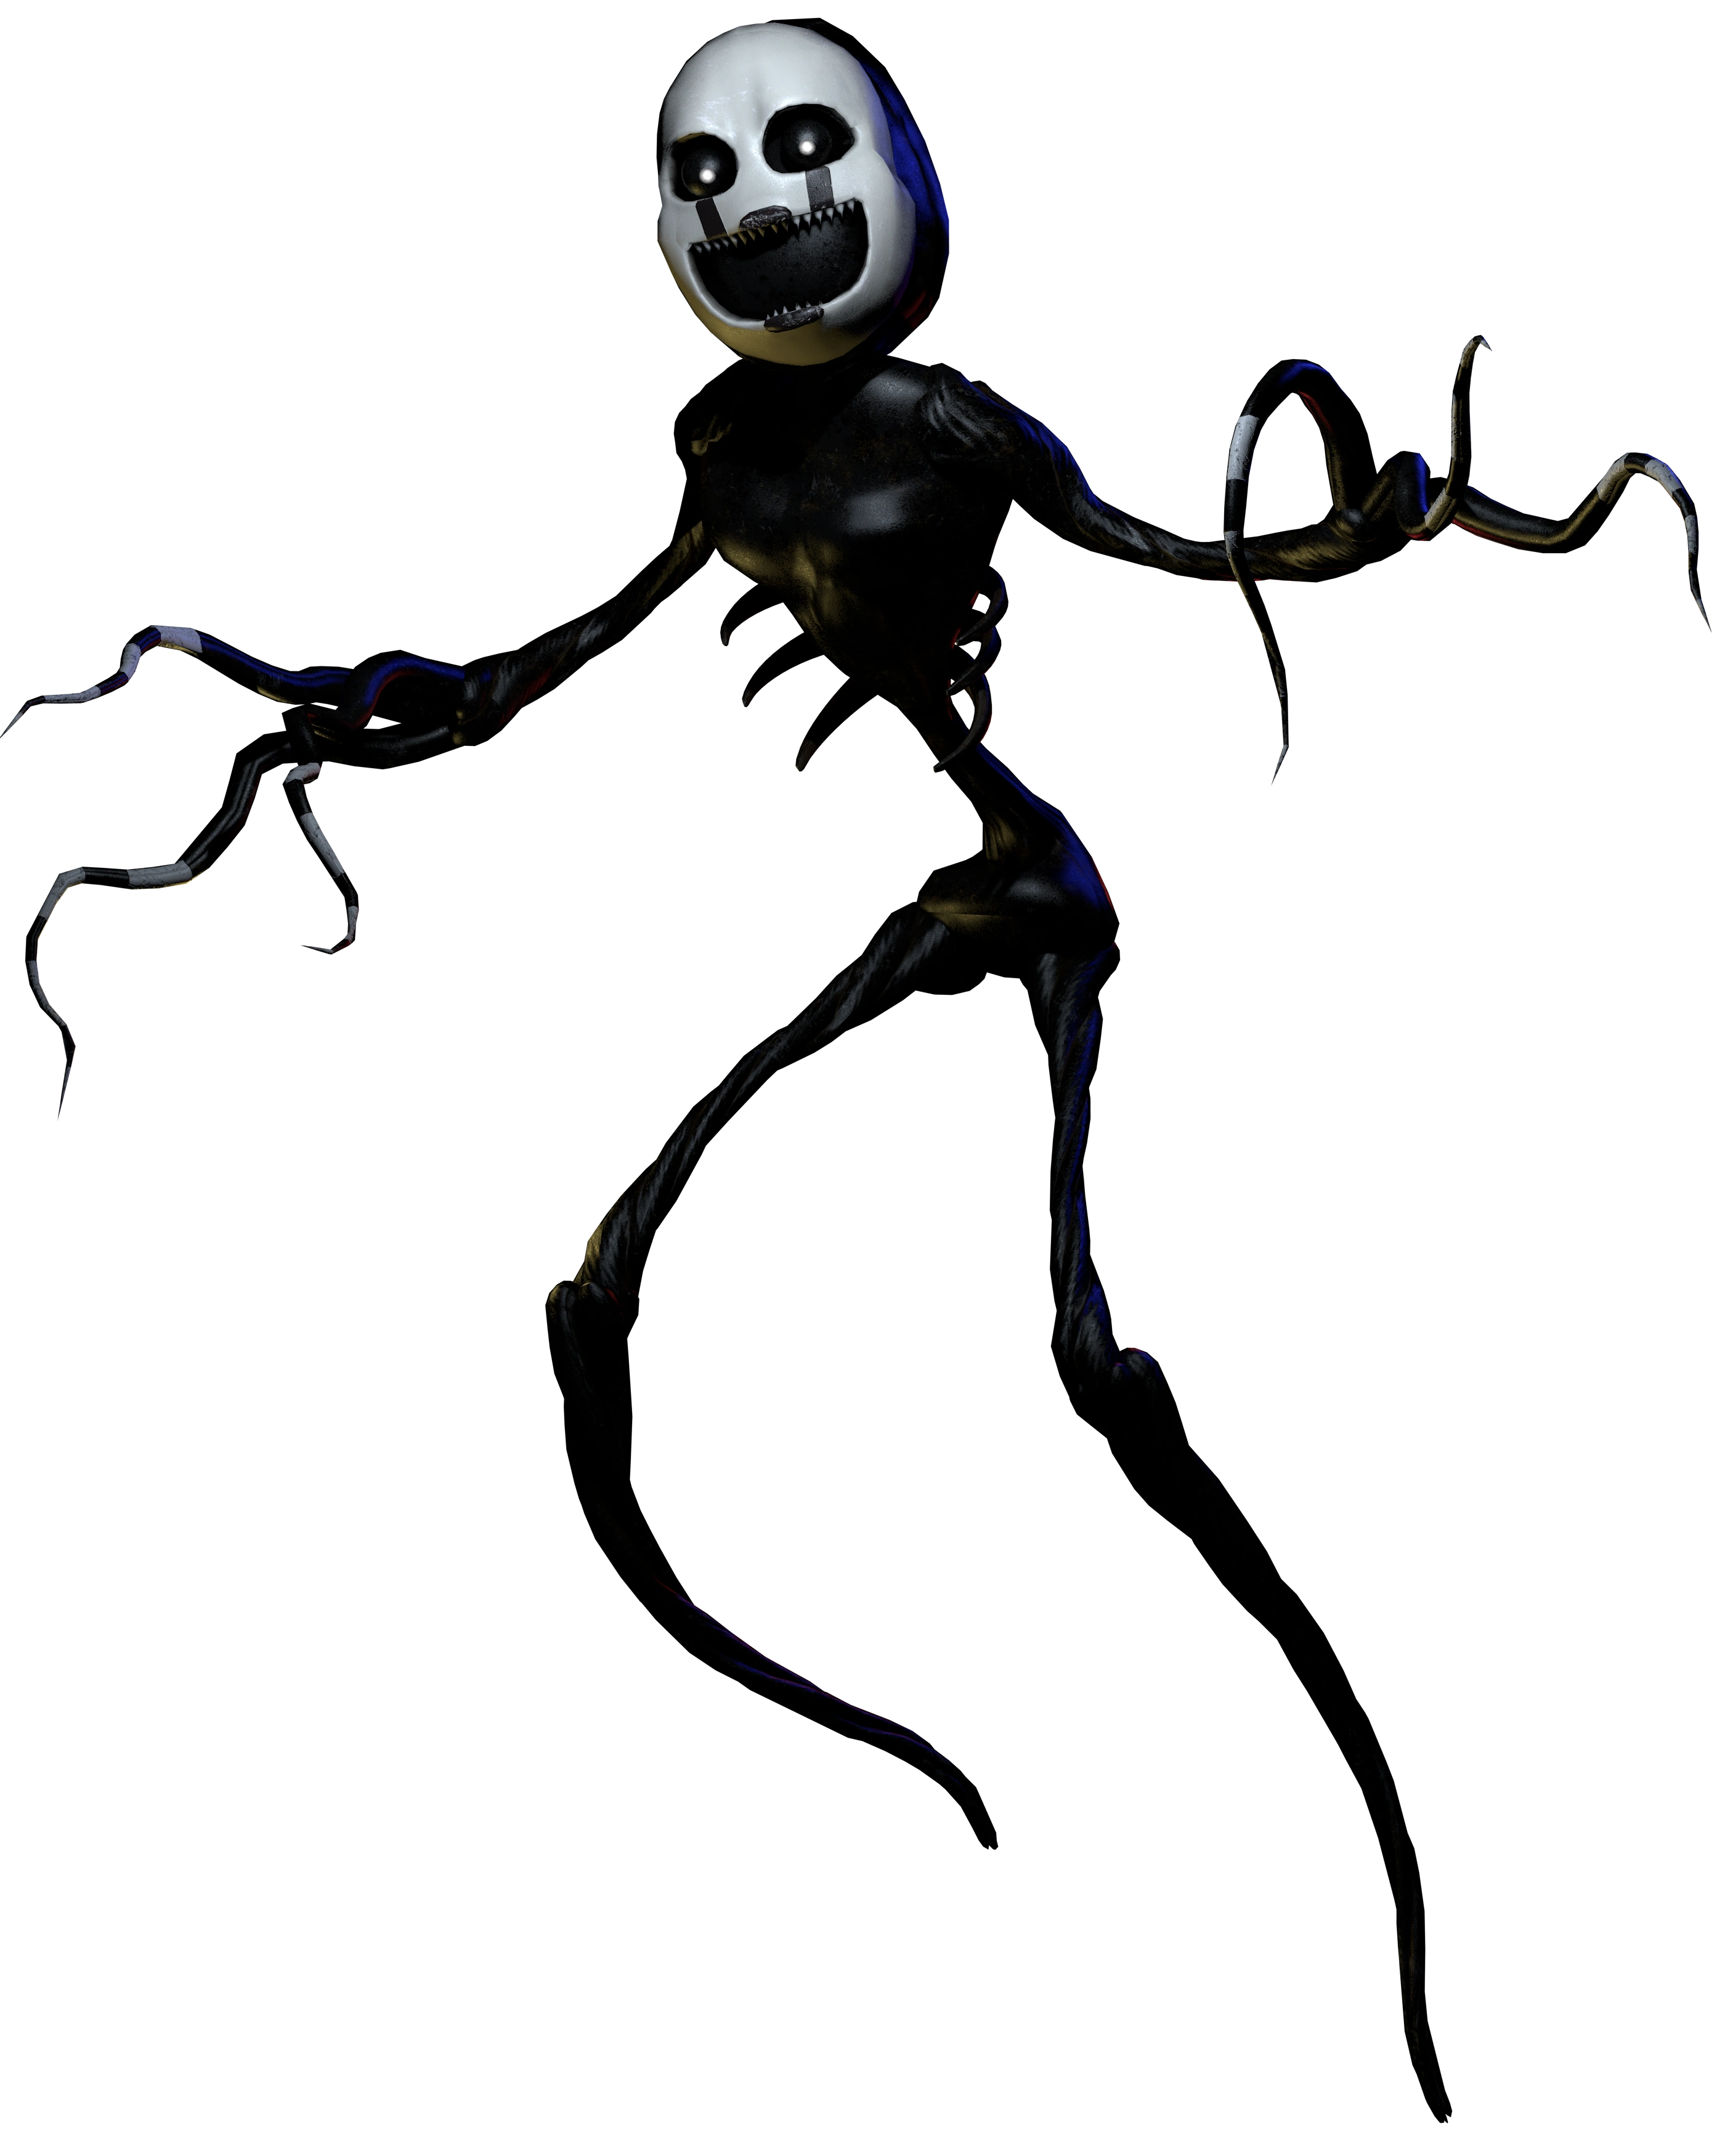 fnaf 4 halloween update nightmare puppet